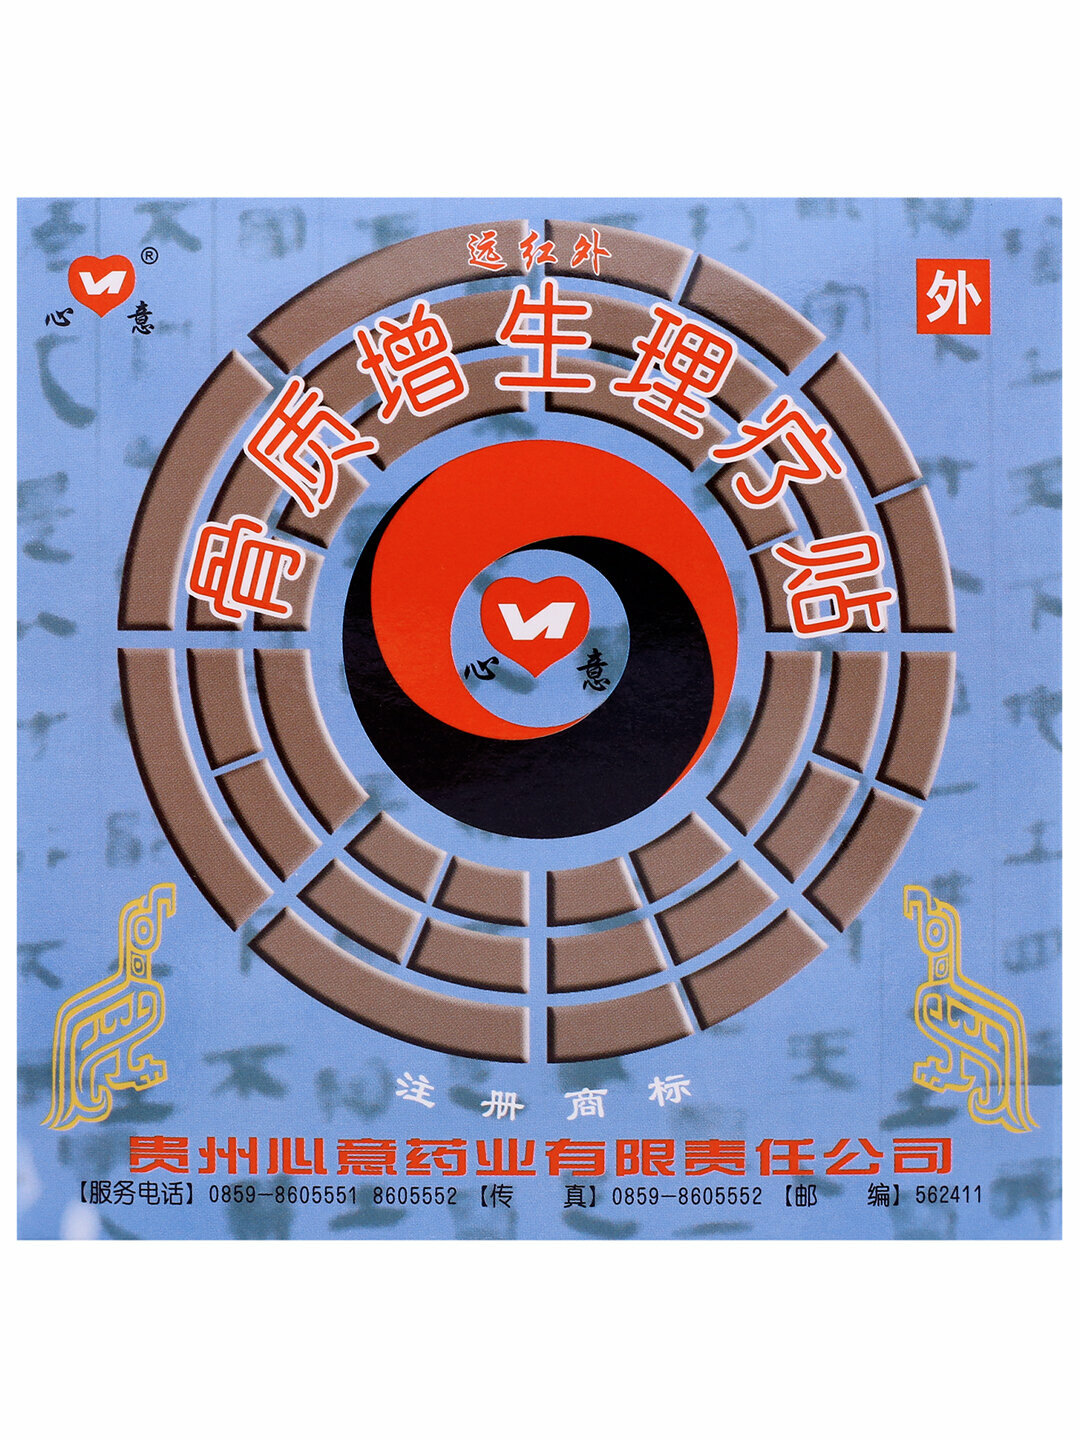 Пластырь Синьи 03 от пяточной шпоры ООО «Китайская медицина» 4 пластины